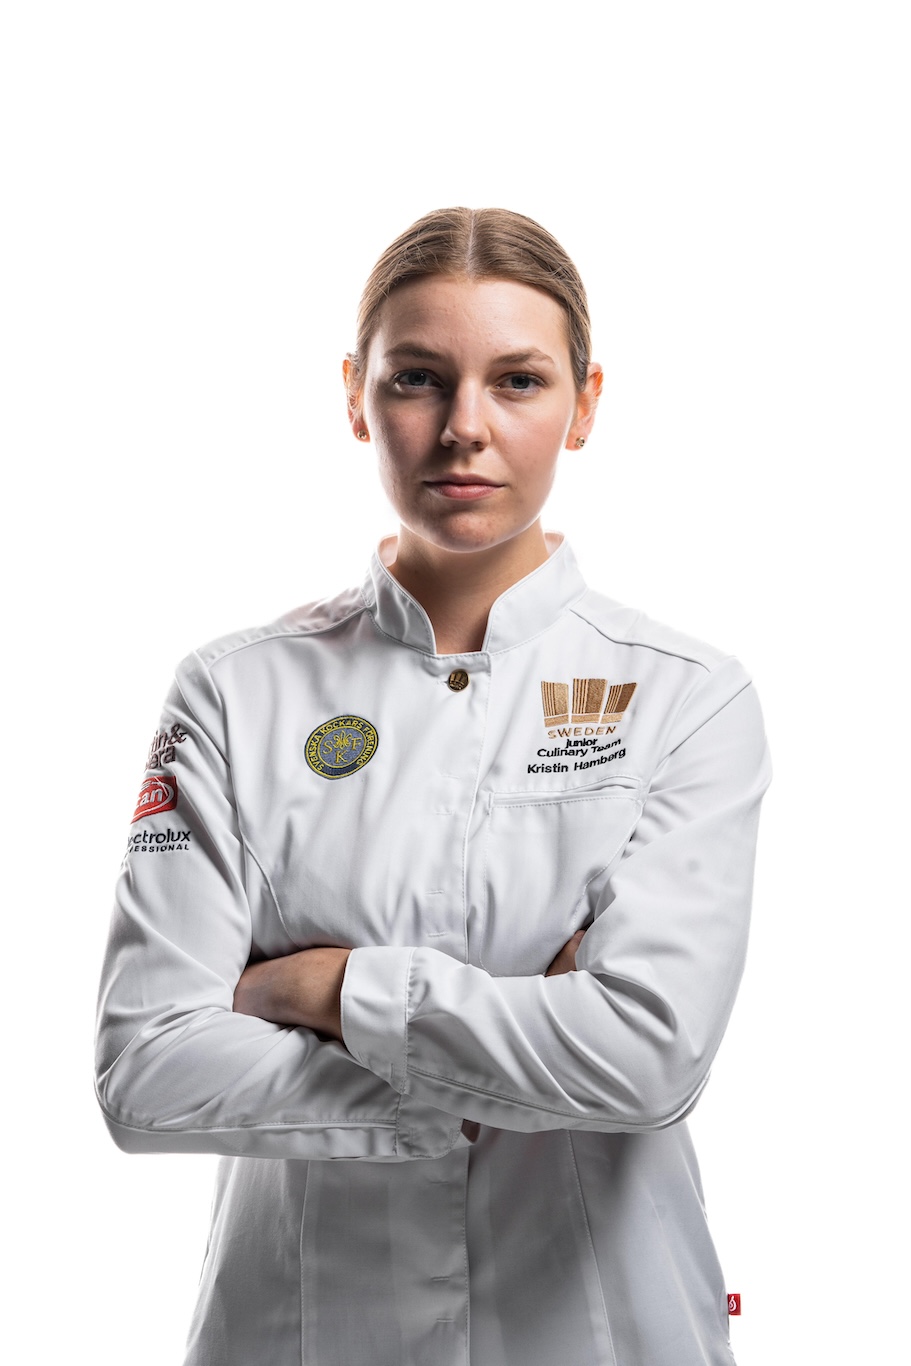 Kristin Hambergs reise fra amatørbaker til kulinarisk OL-gullvinner 5